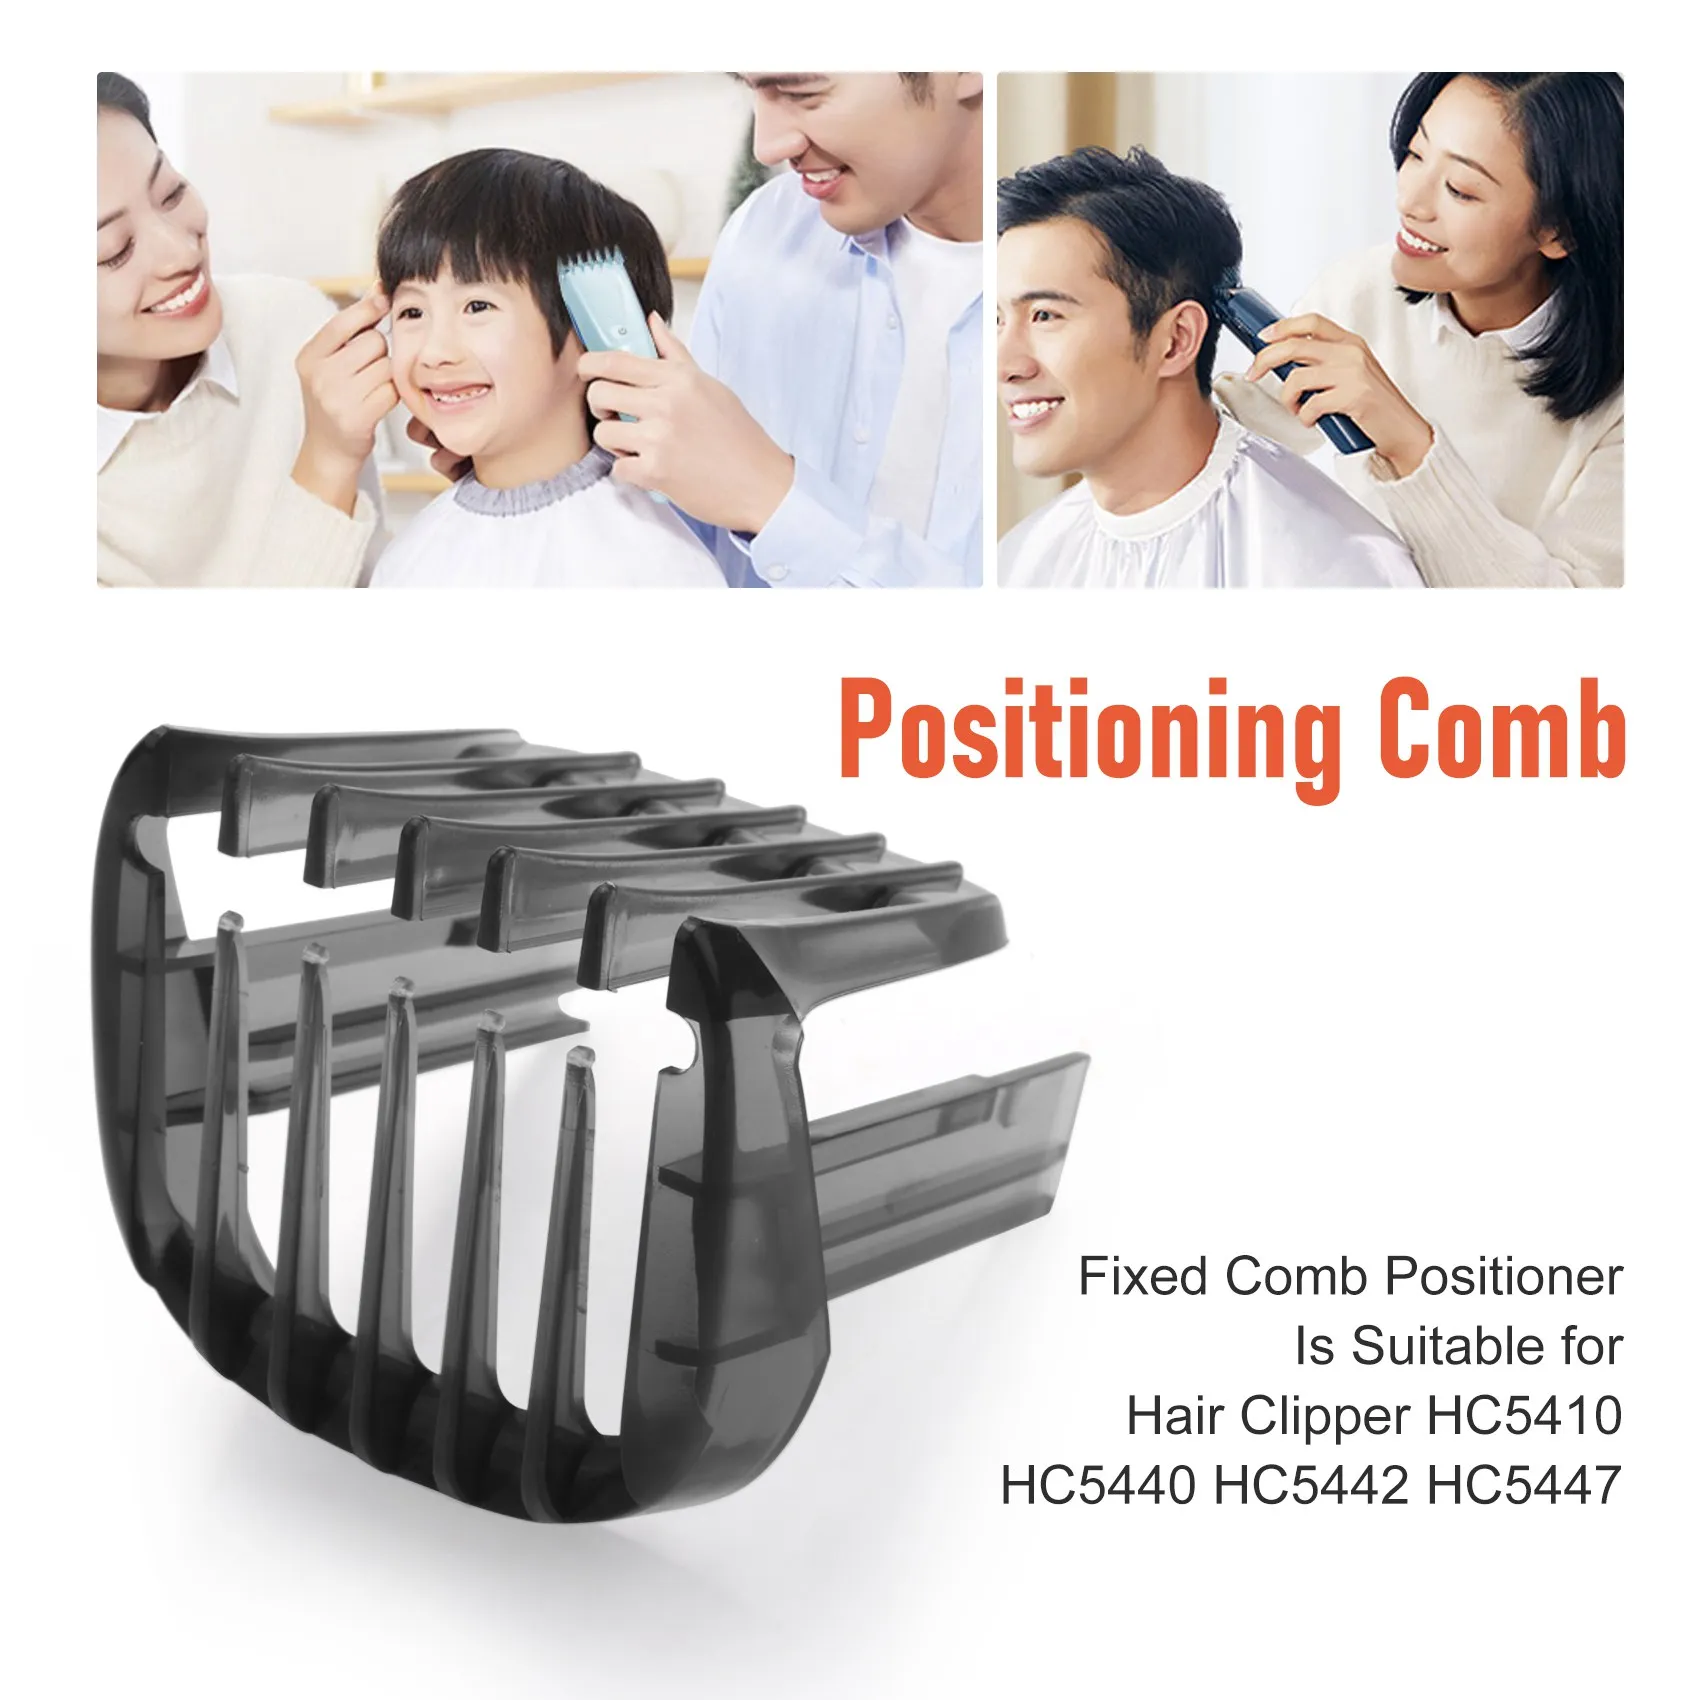 קבוע המסרק Positioner מתאים עבור שיער קליפר HC5410 HC5440 HC5442 HC5447 - 4